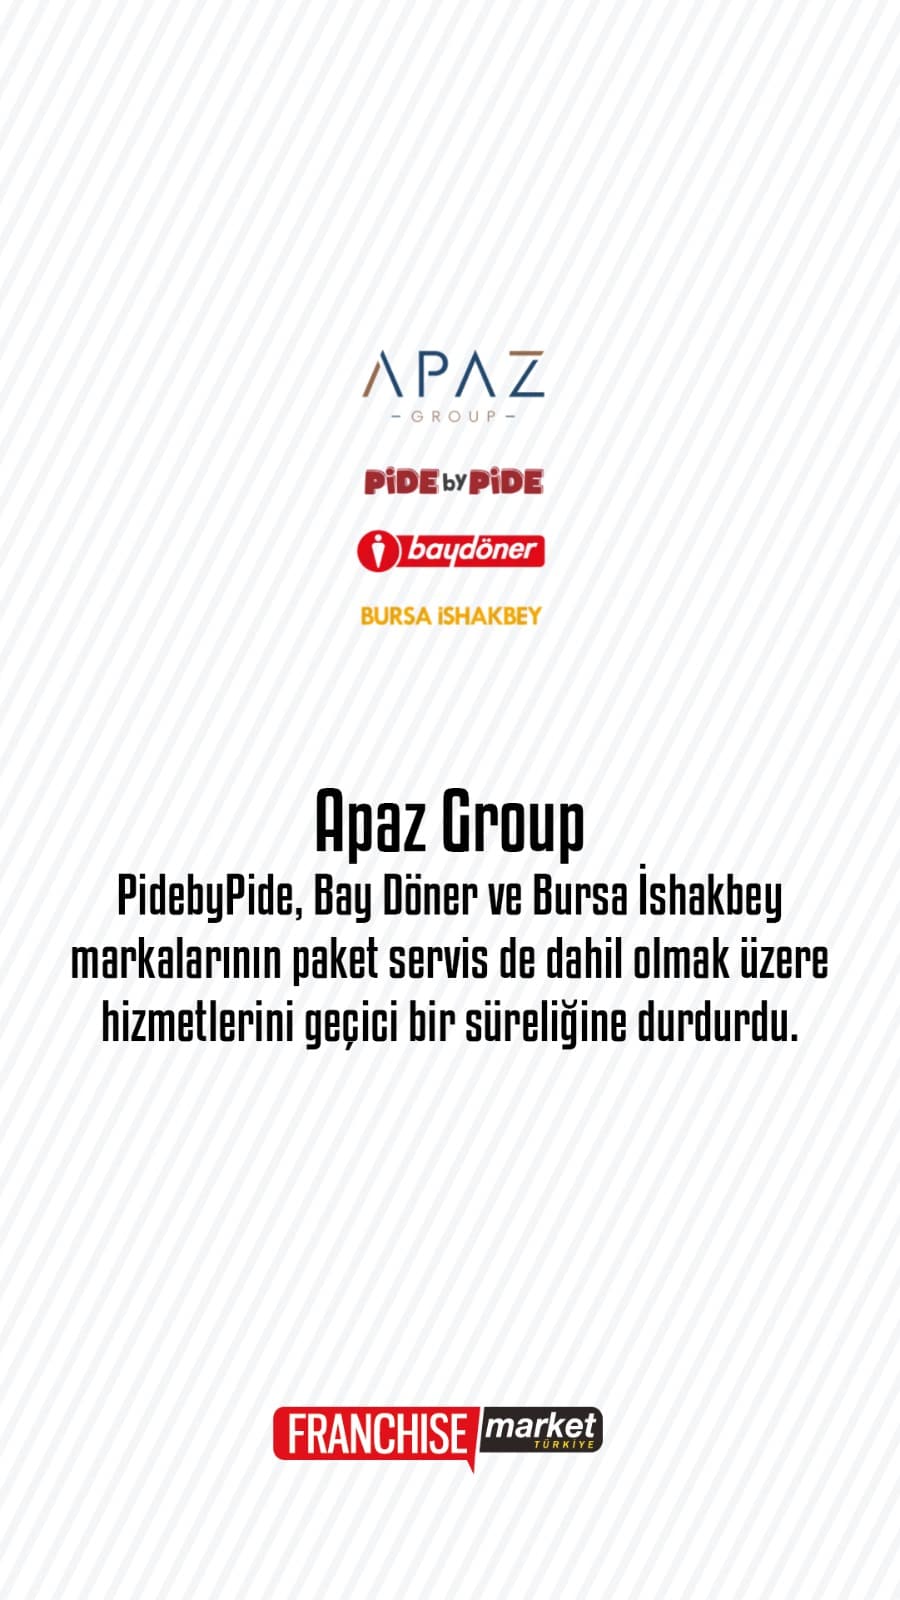 Apaz Group, Corona virüsü önlemi adına servislerini durdurdu